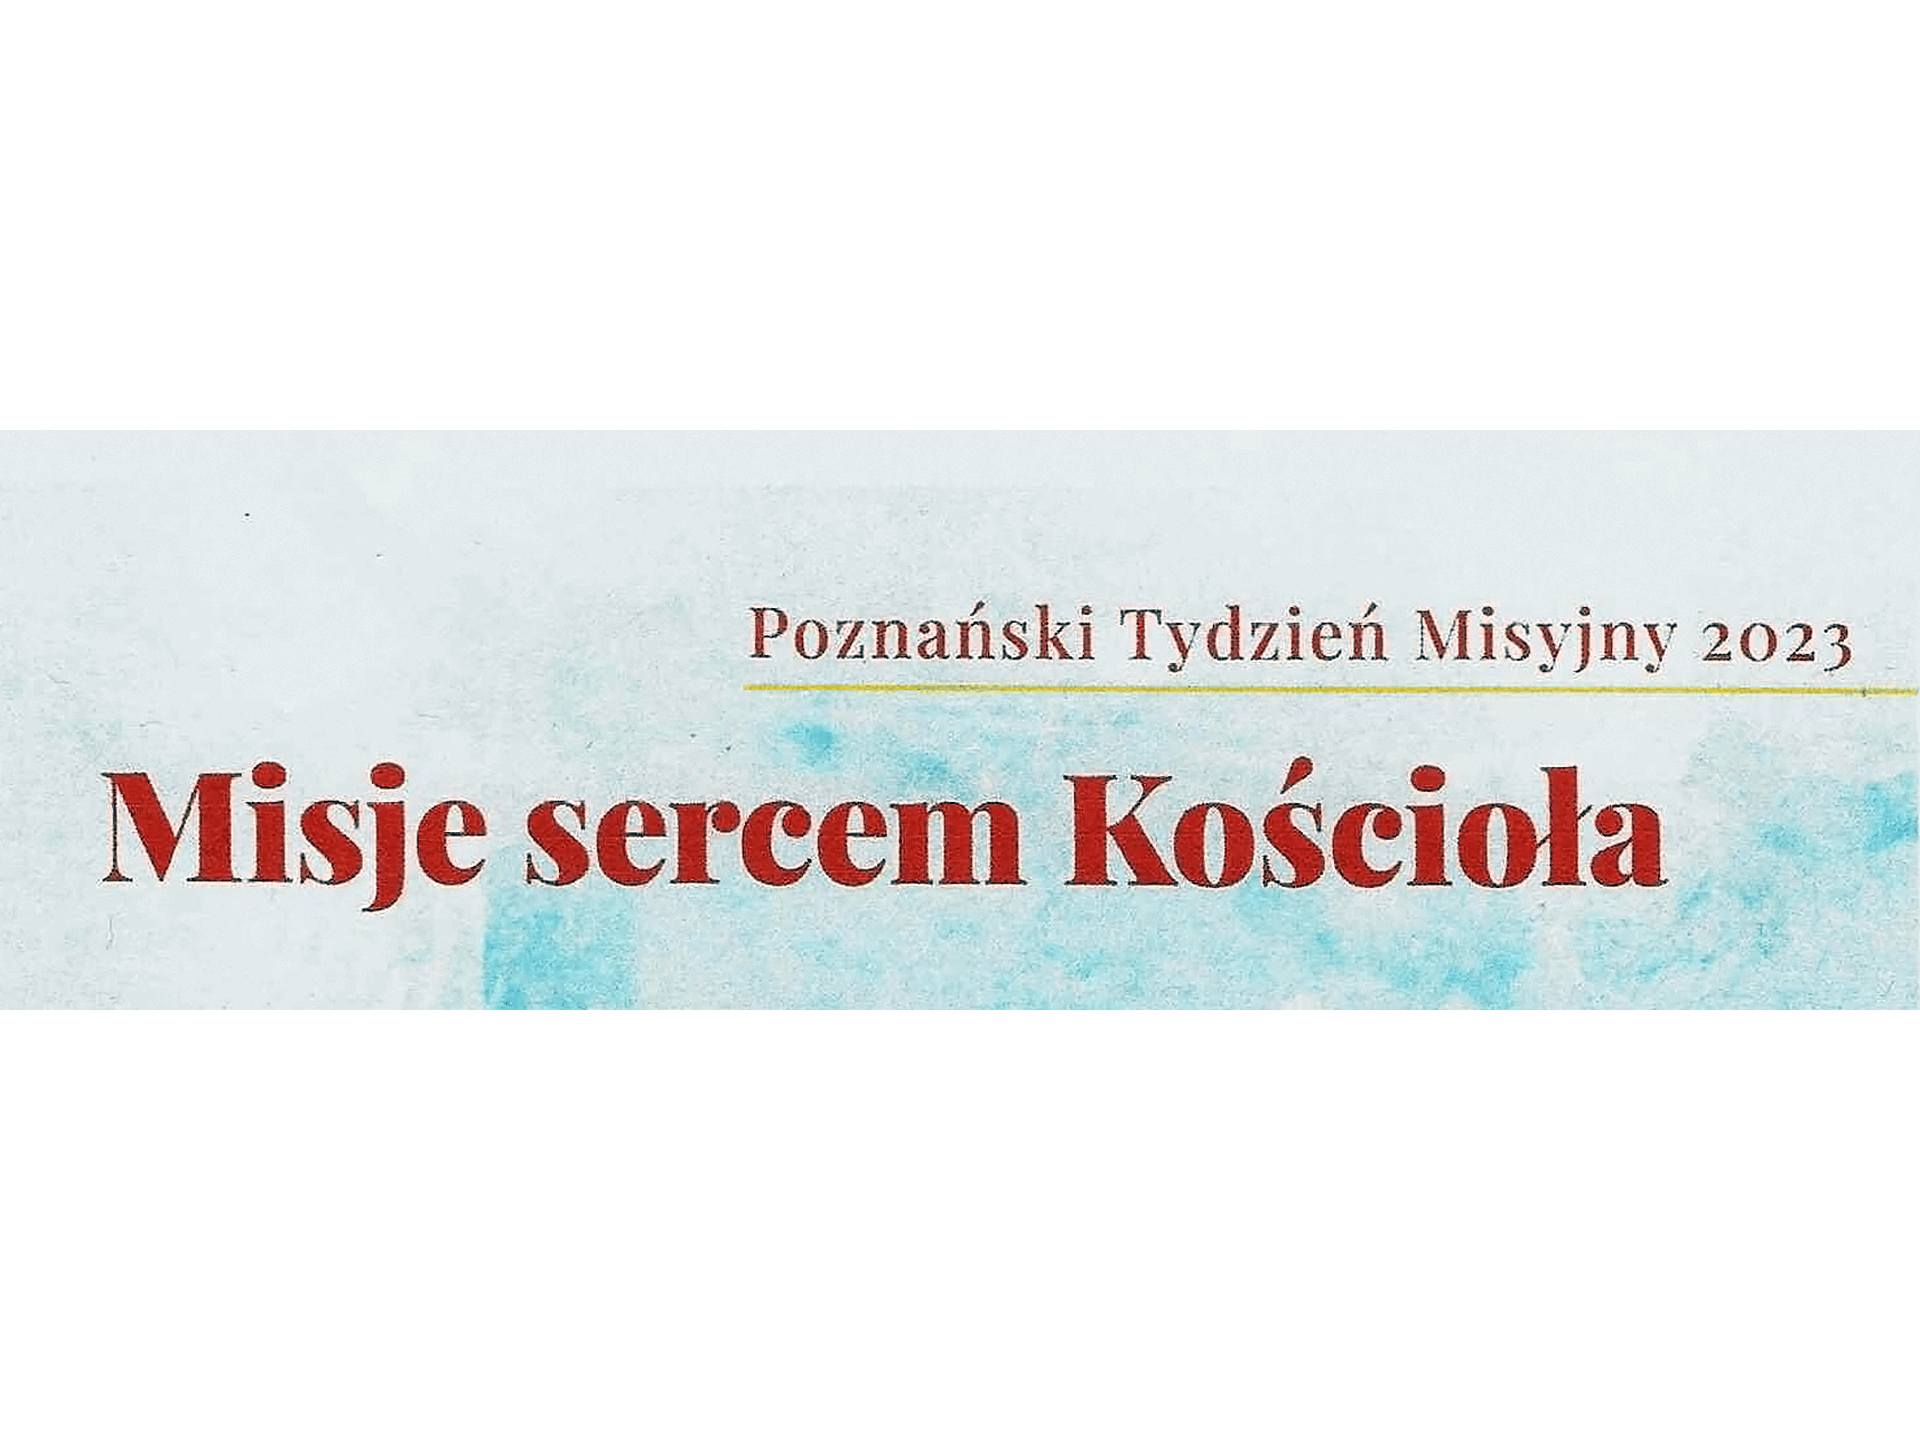 Poznański Tydzień Misyjny 22-27 października 2023